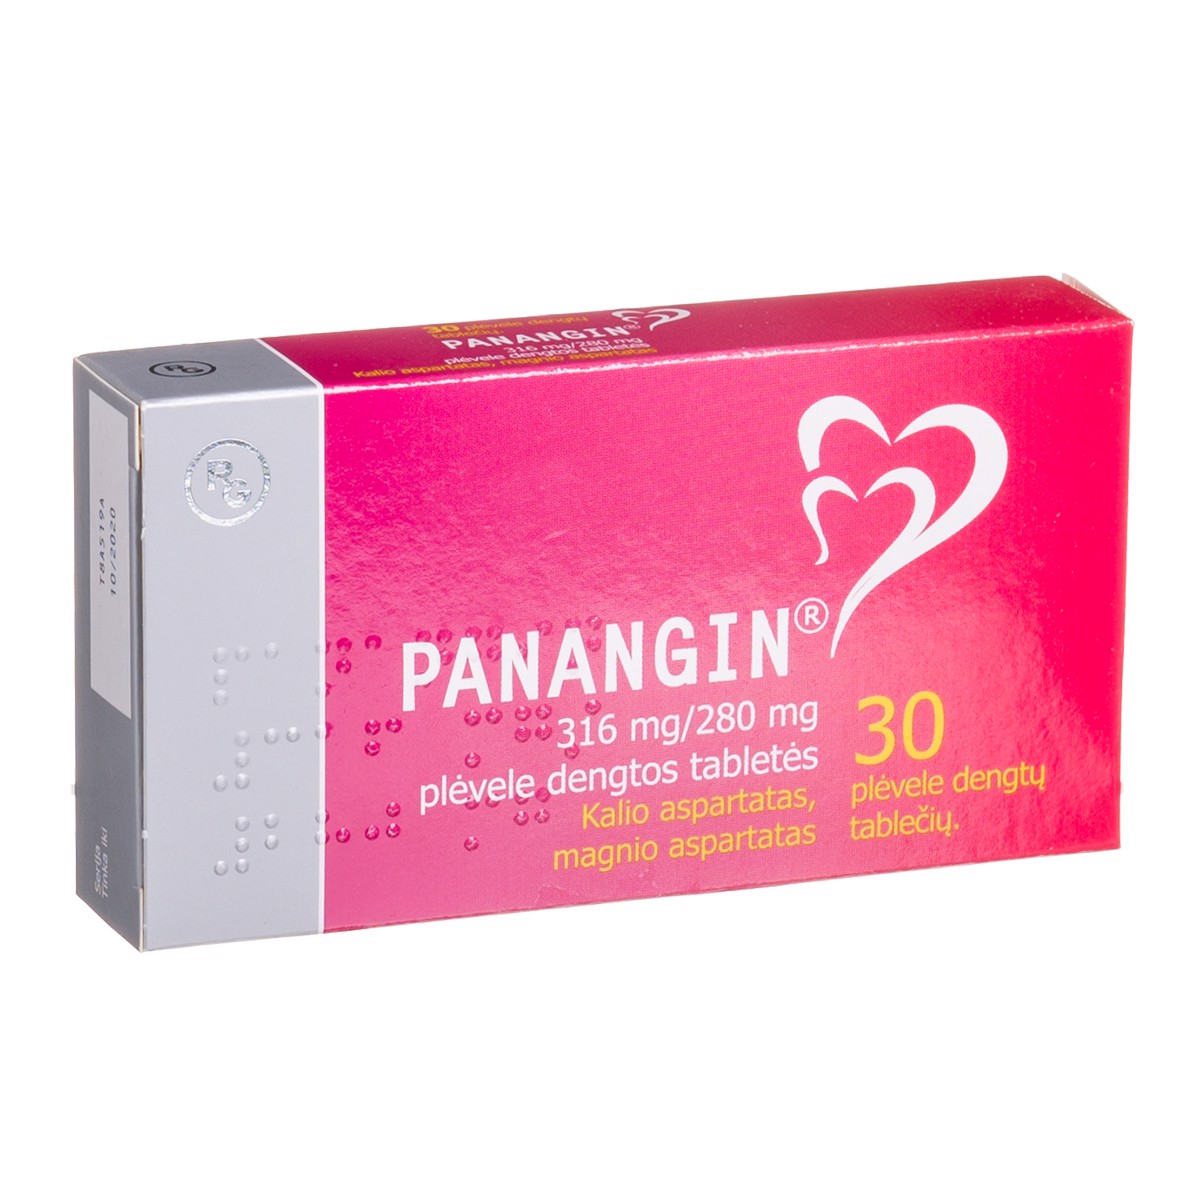 PANANGIN, 316 mg/280 mg, plėvele dengtos tabletės, N30